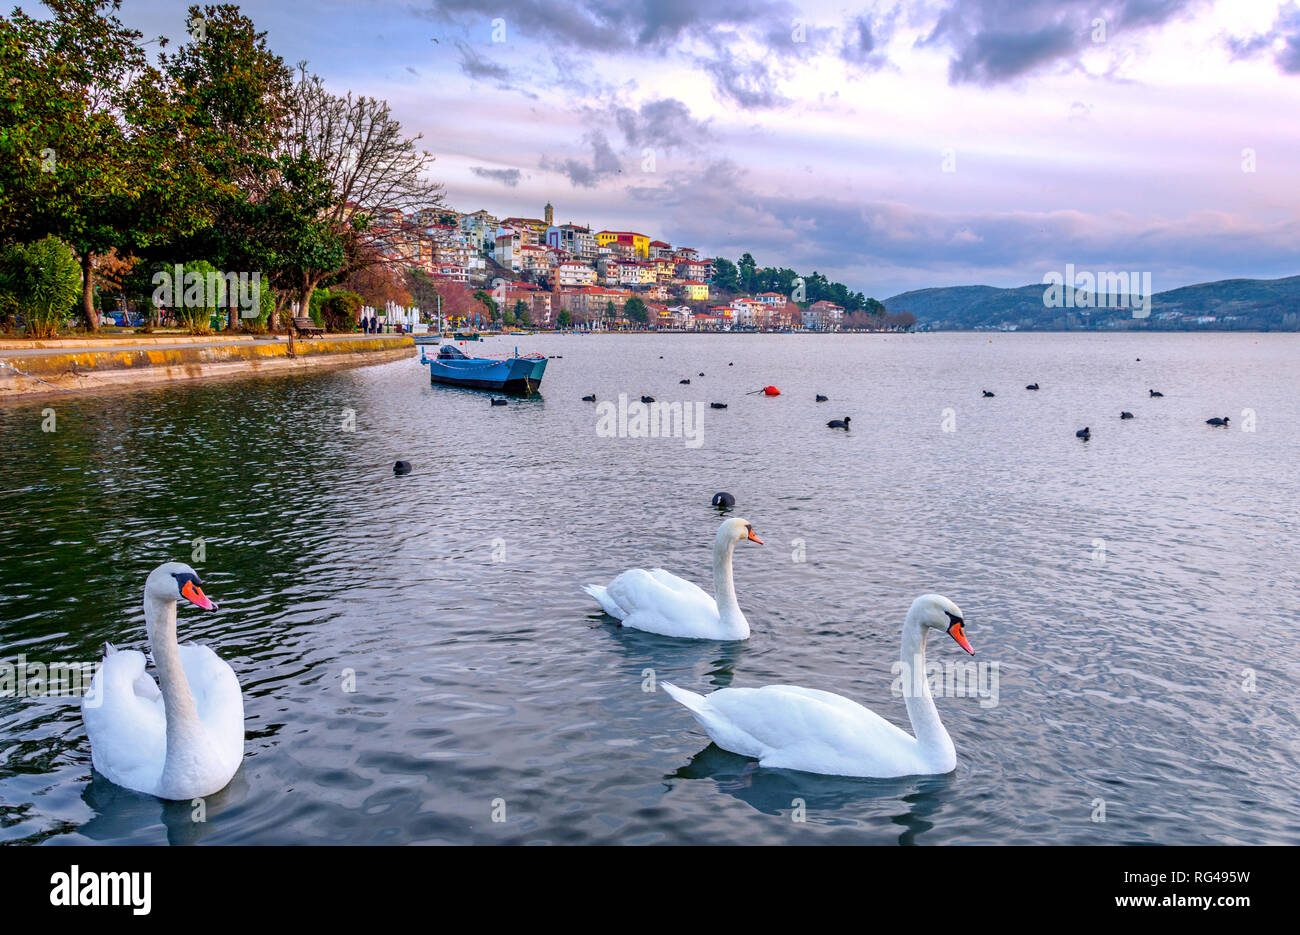 View of Kastoria town and Orestiada (or 'Orestias') lake, Macedonia, Greece. Stock Photo